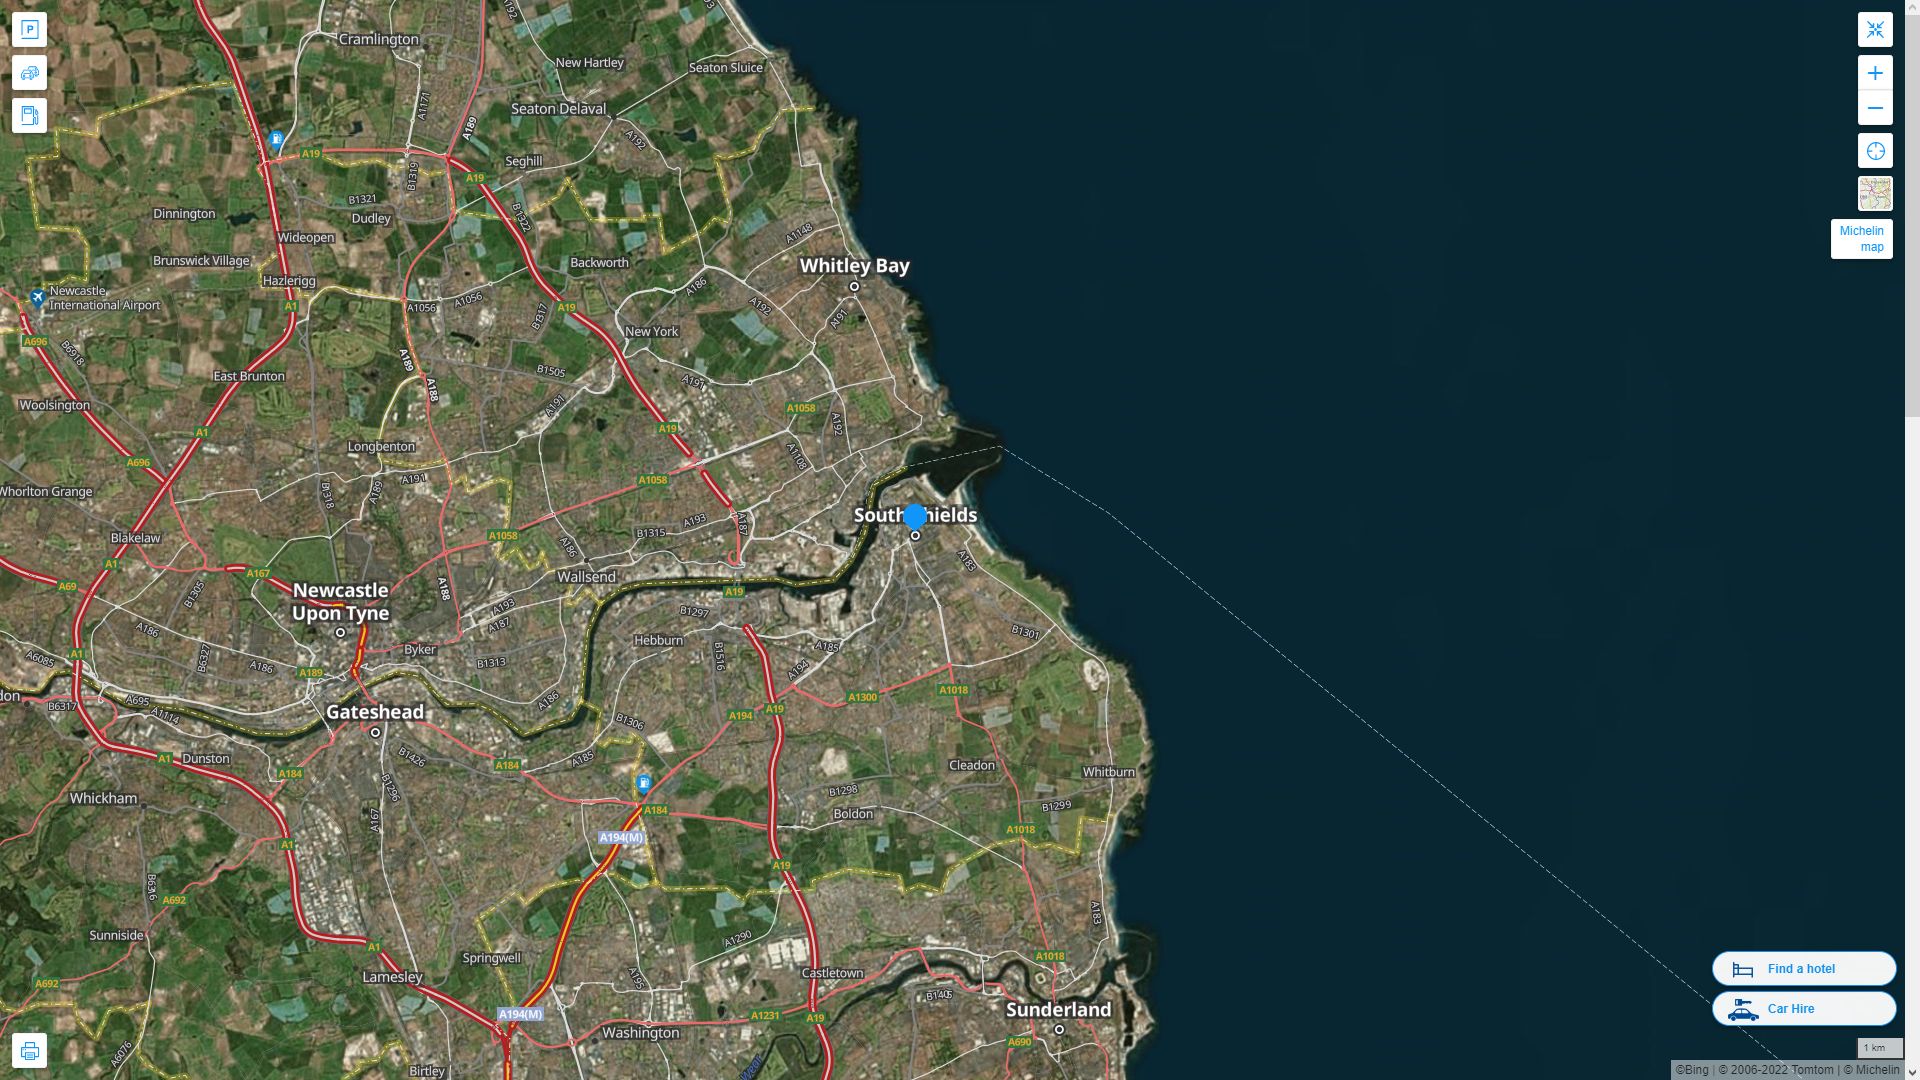 South Shields Royaume Uni Autoroute et carte routiere avec vue satellite